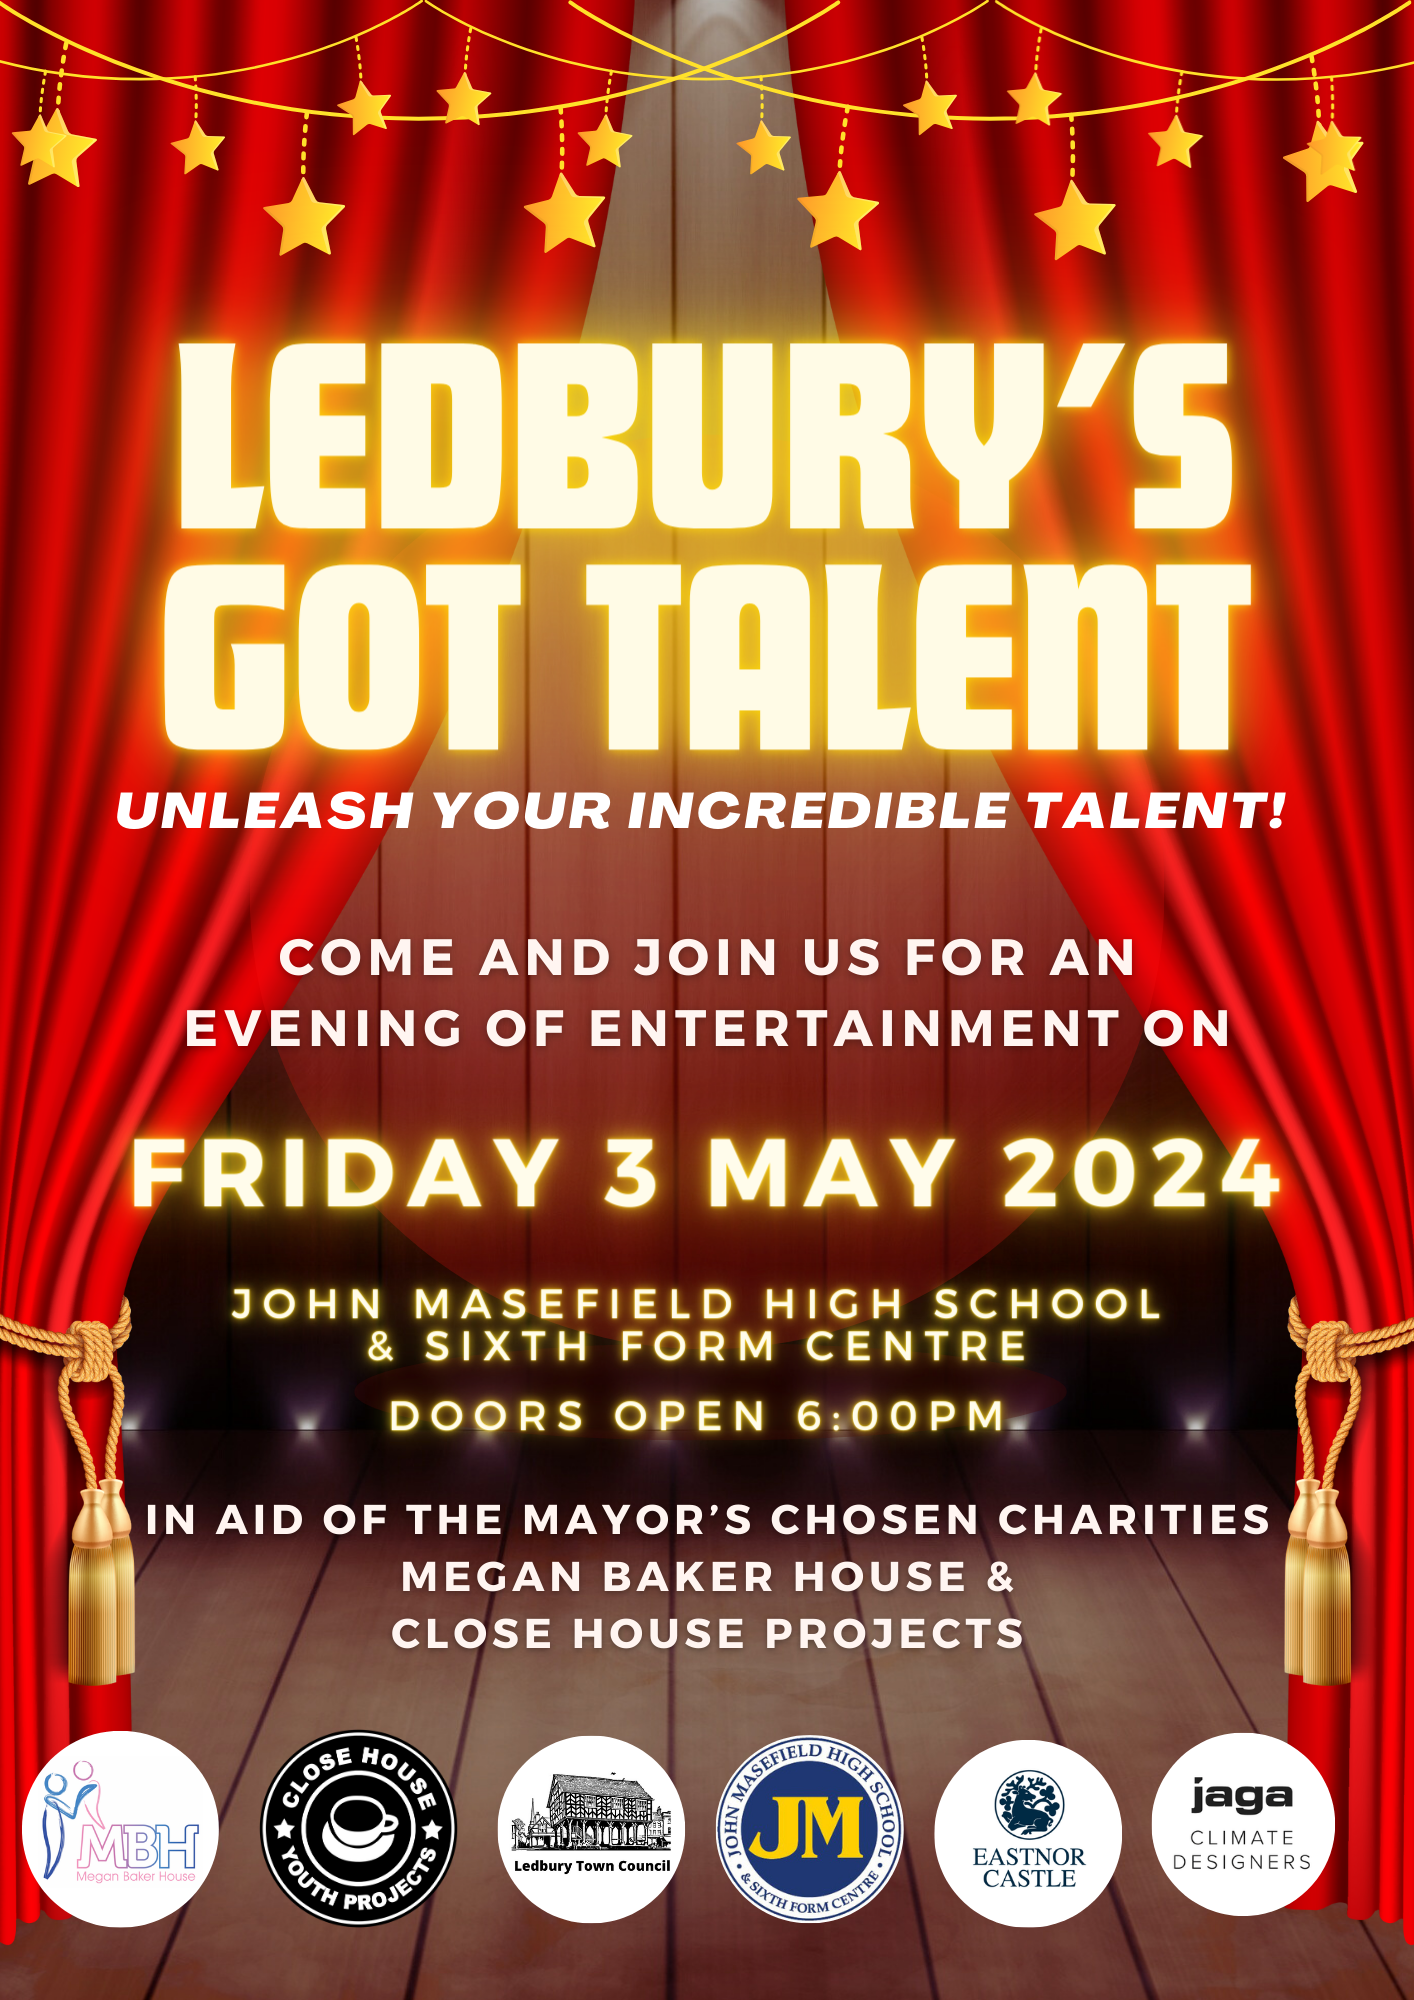 Ledburys Got Talent!